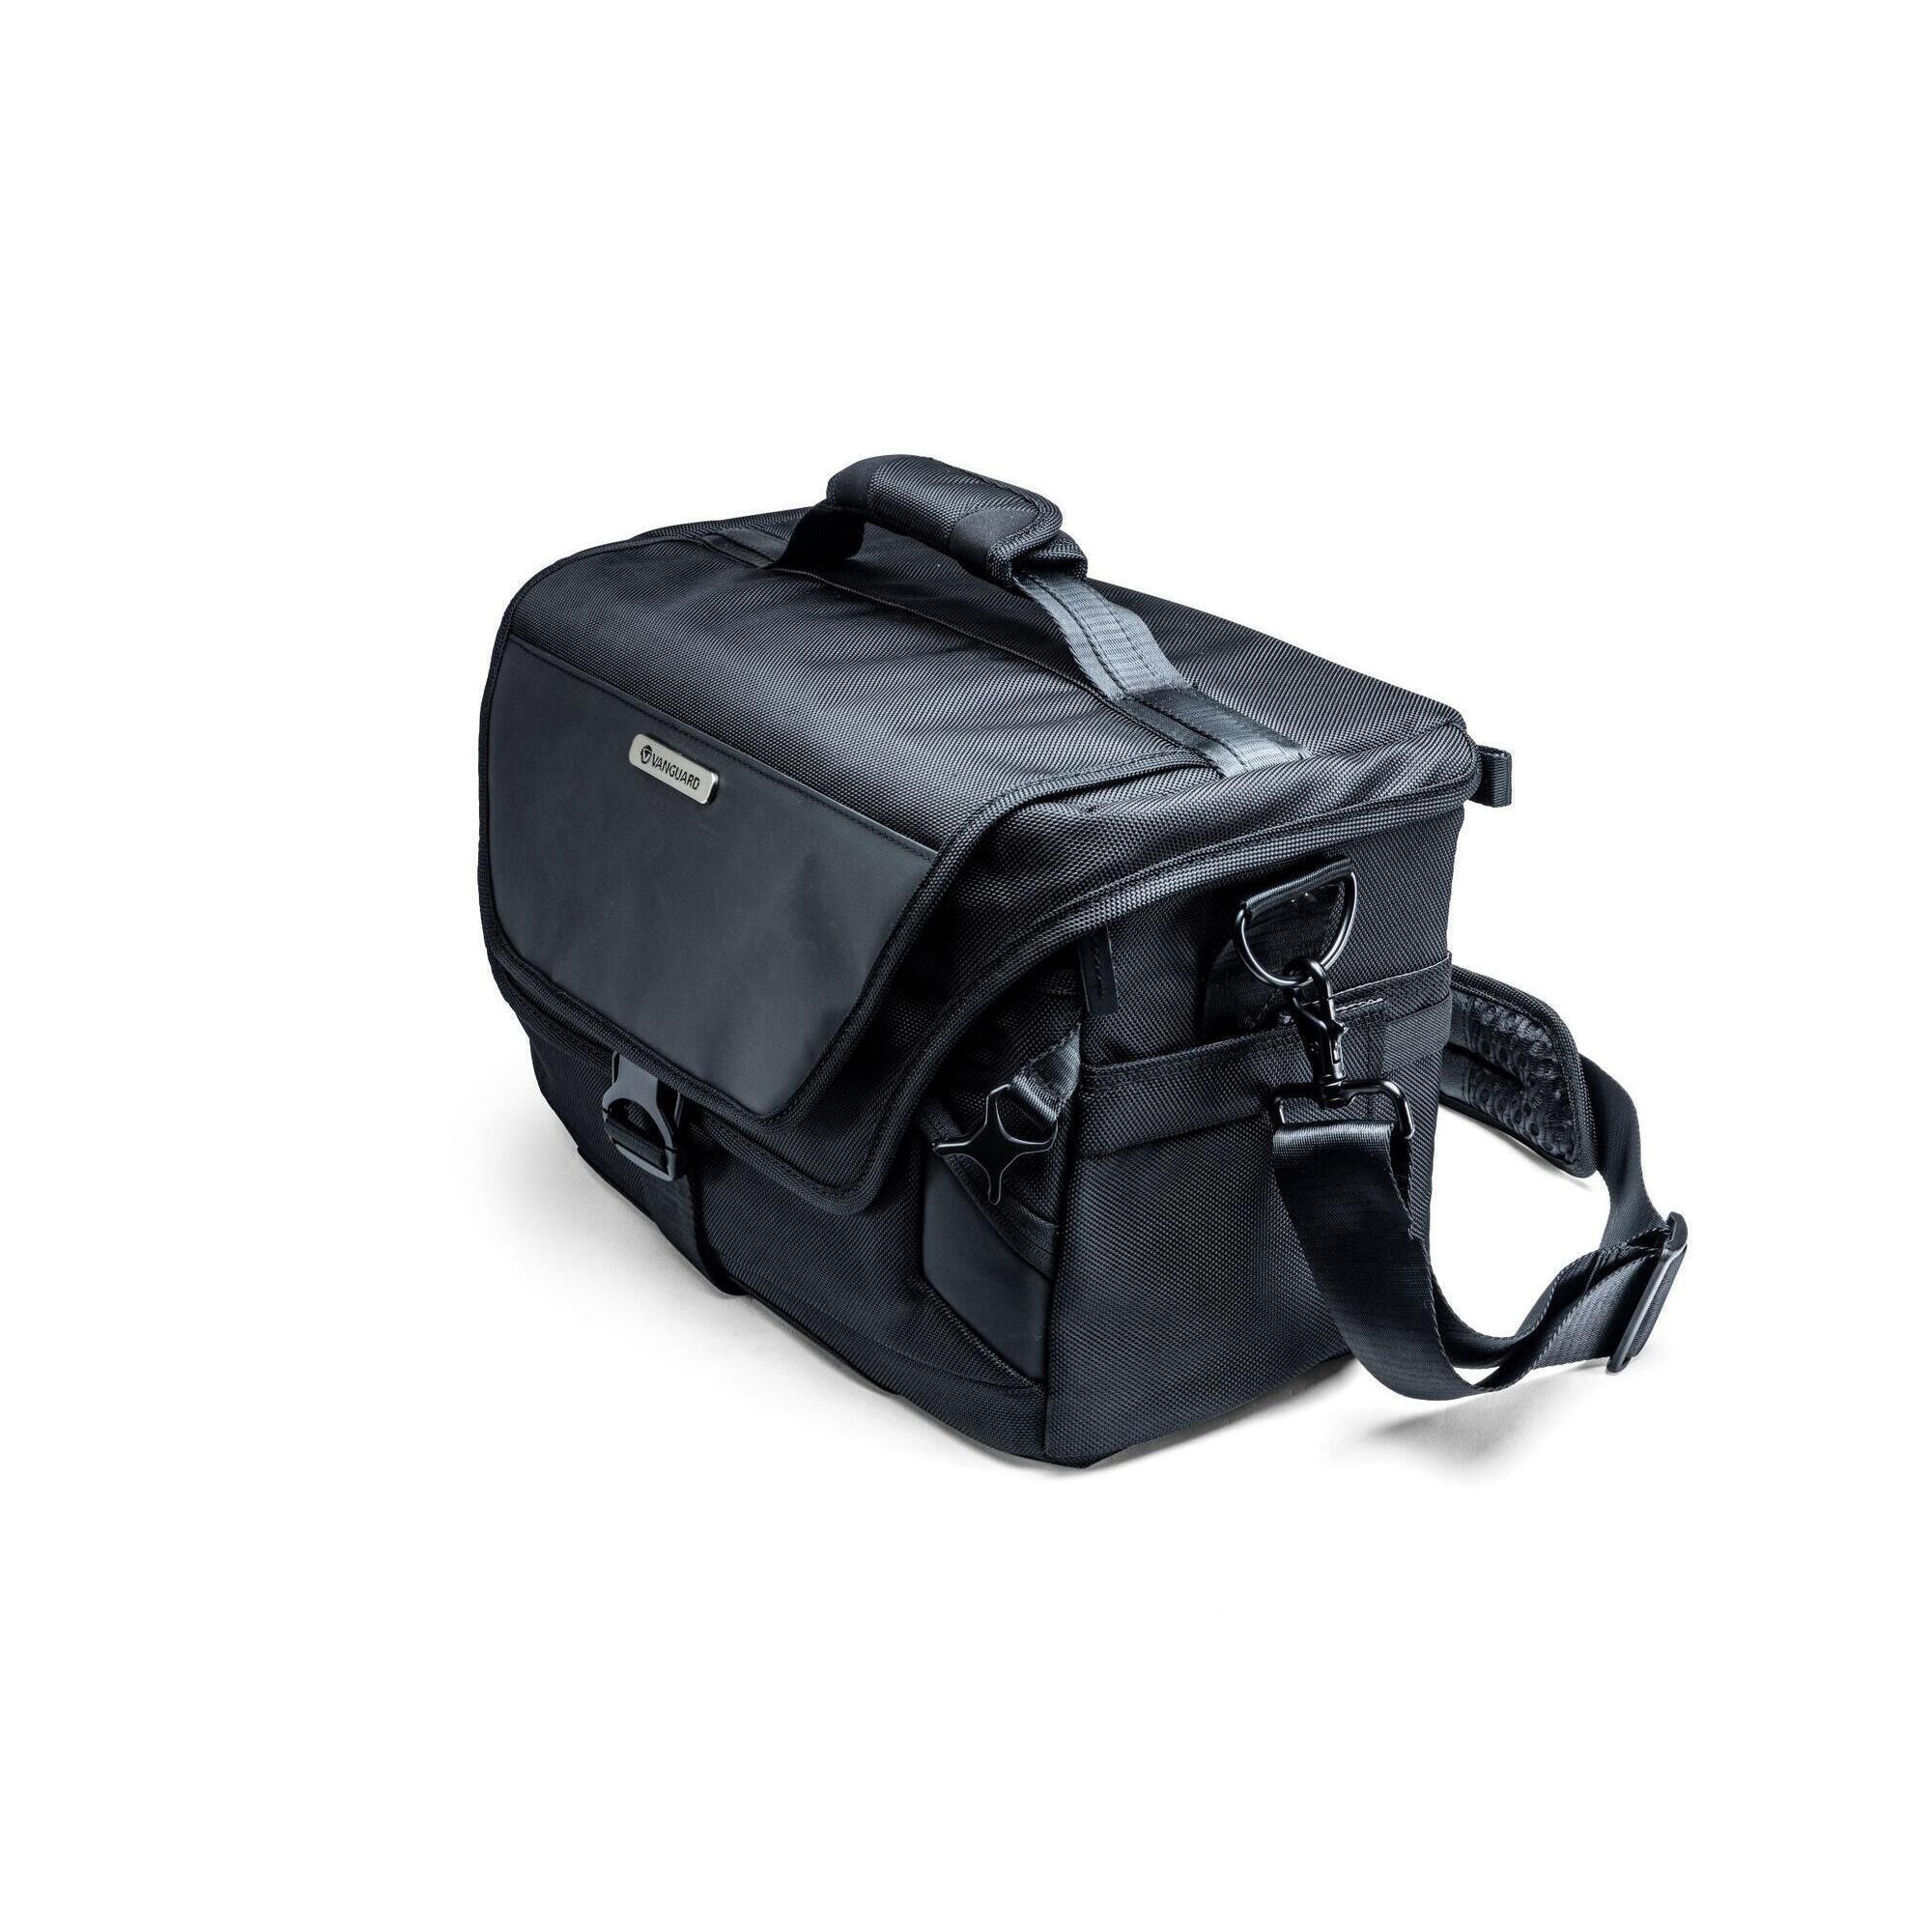 VANGUARD VEO SELECT 36S BK - Large Shoulder Bag - Black